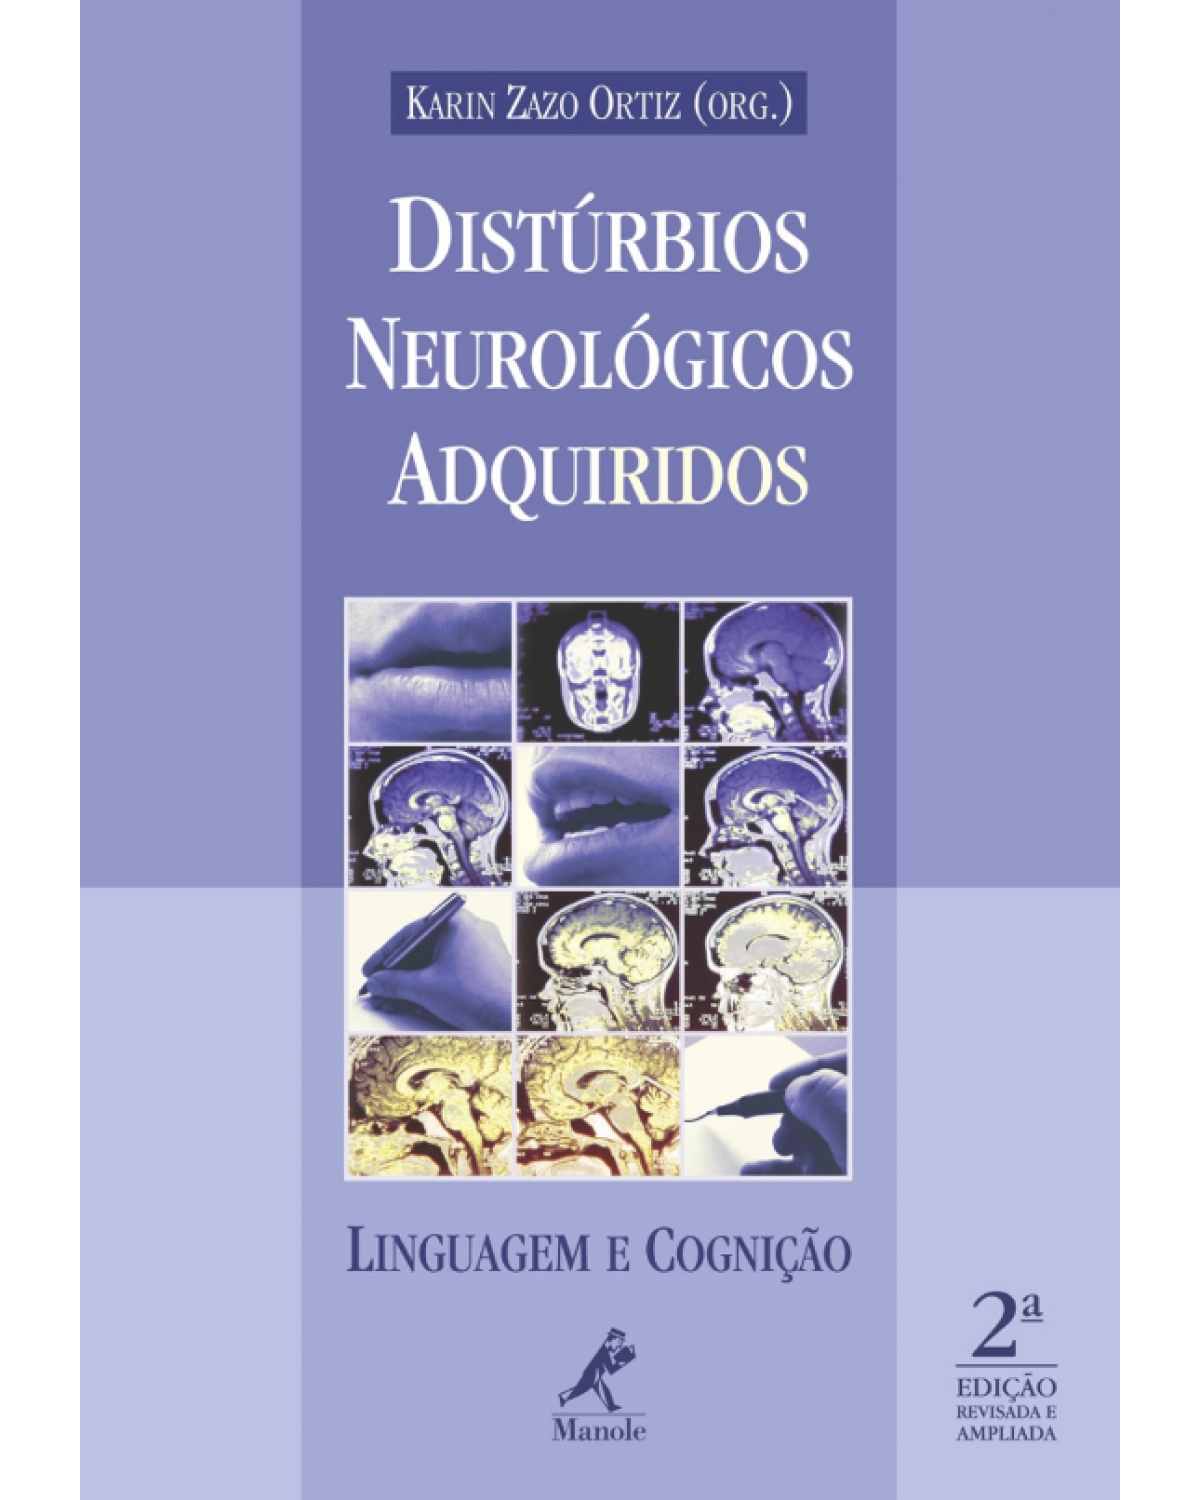 Distúrbios neurológicos adquiridos - Linguagem e cognição - 2ª Edição | 2009